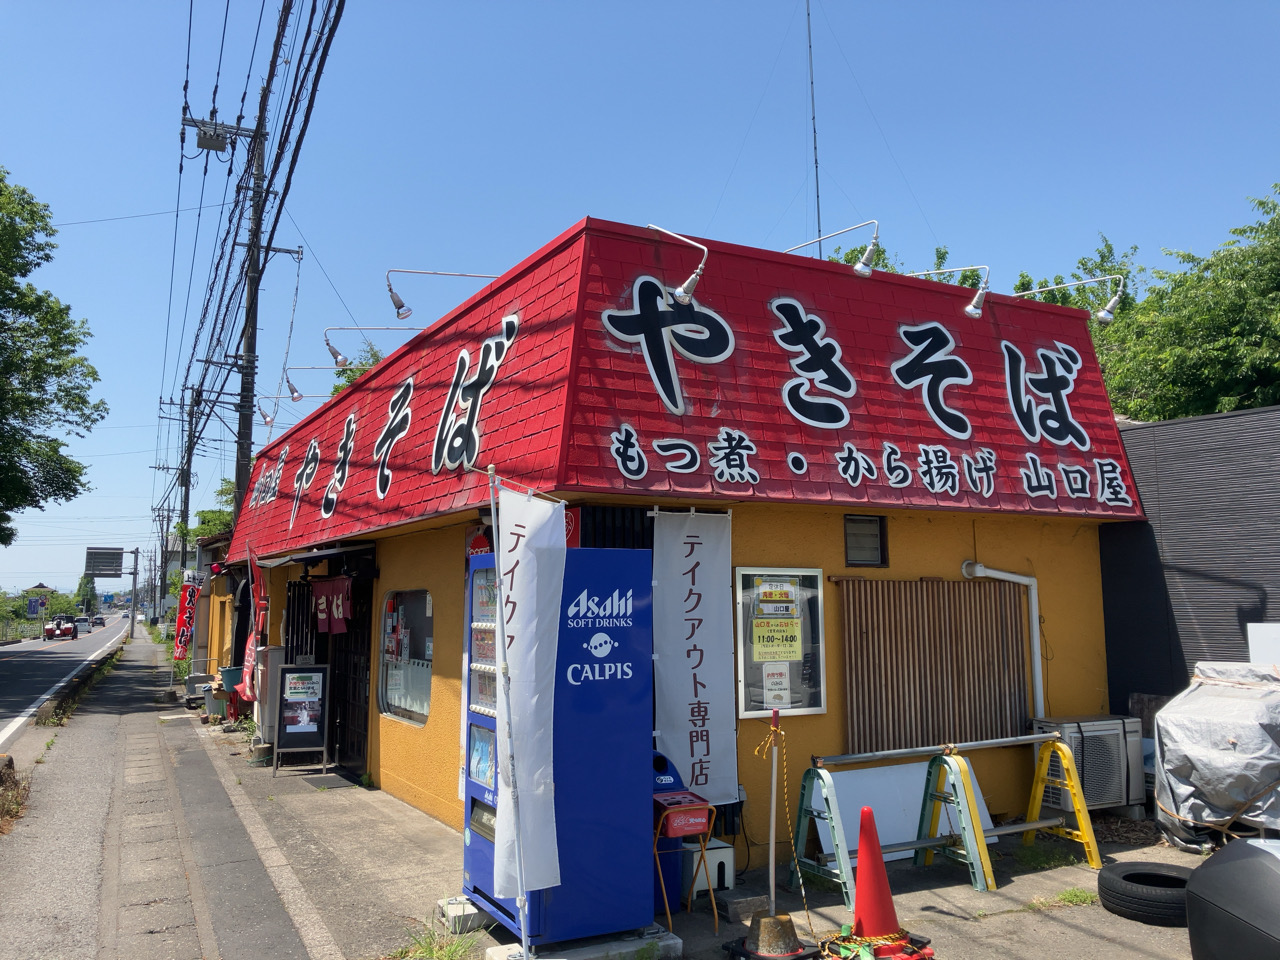 太田市の焼きそば専門店「山口屋」でテークアウトの焼きそばを購入